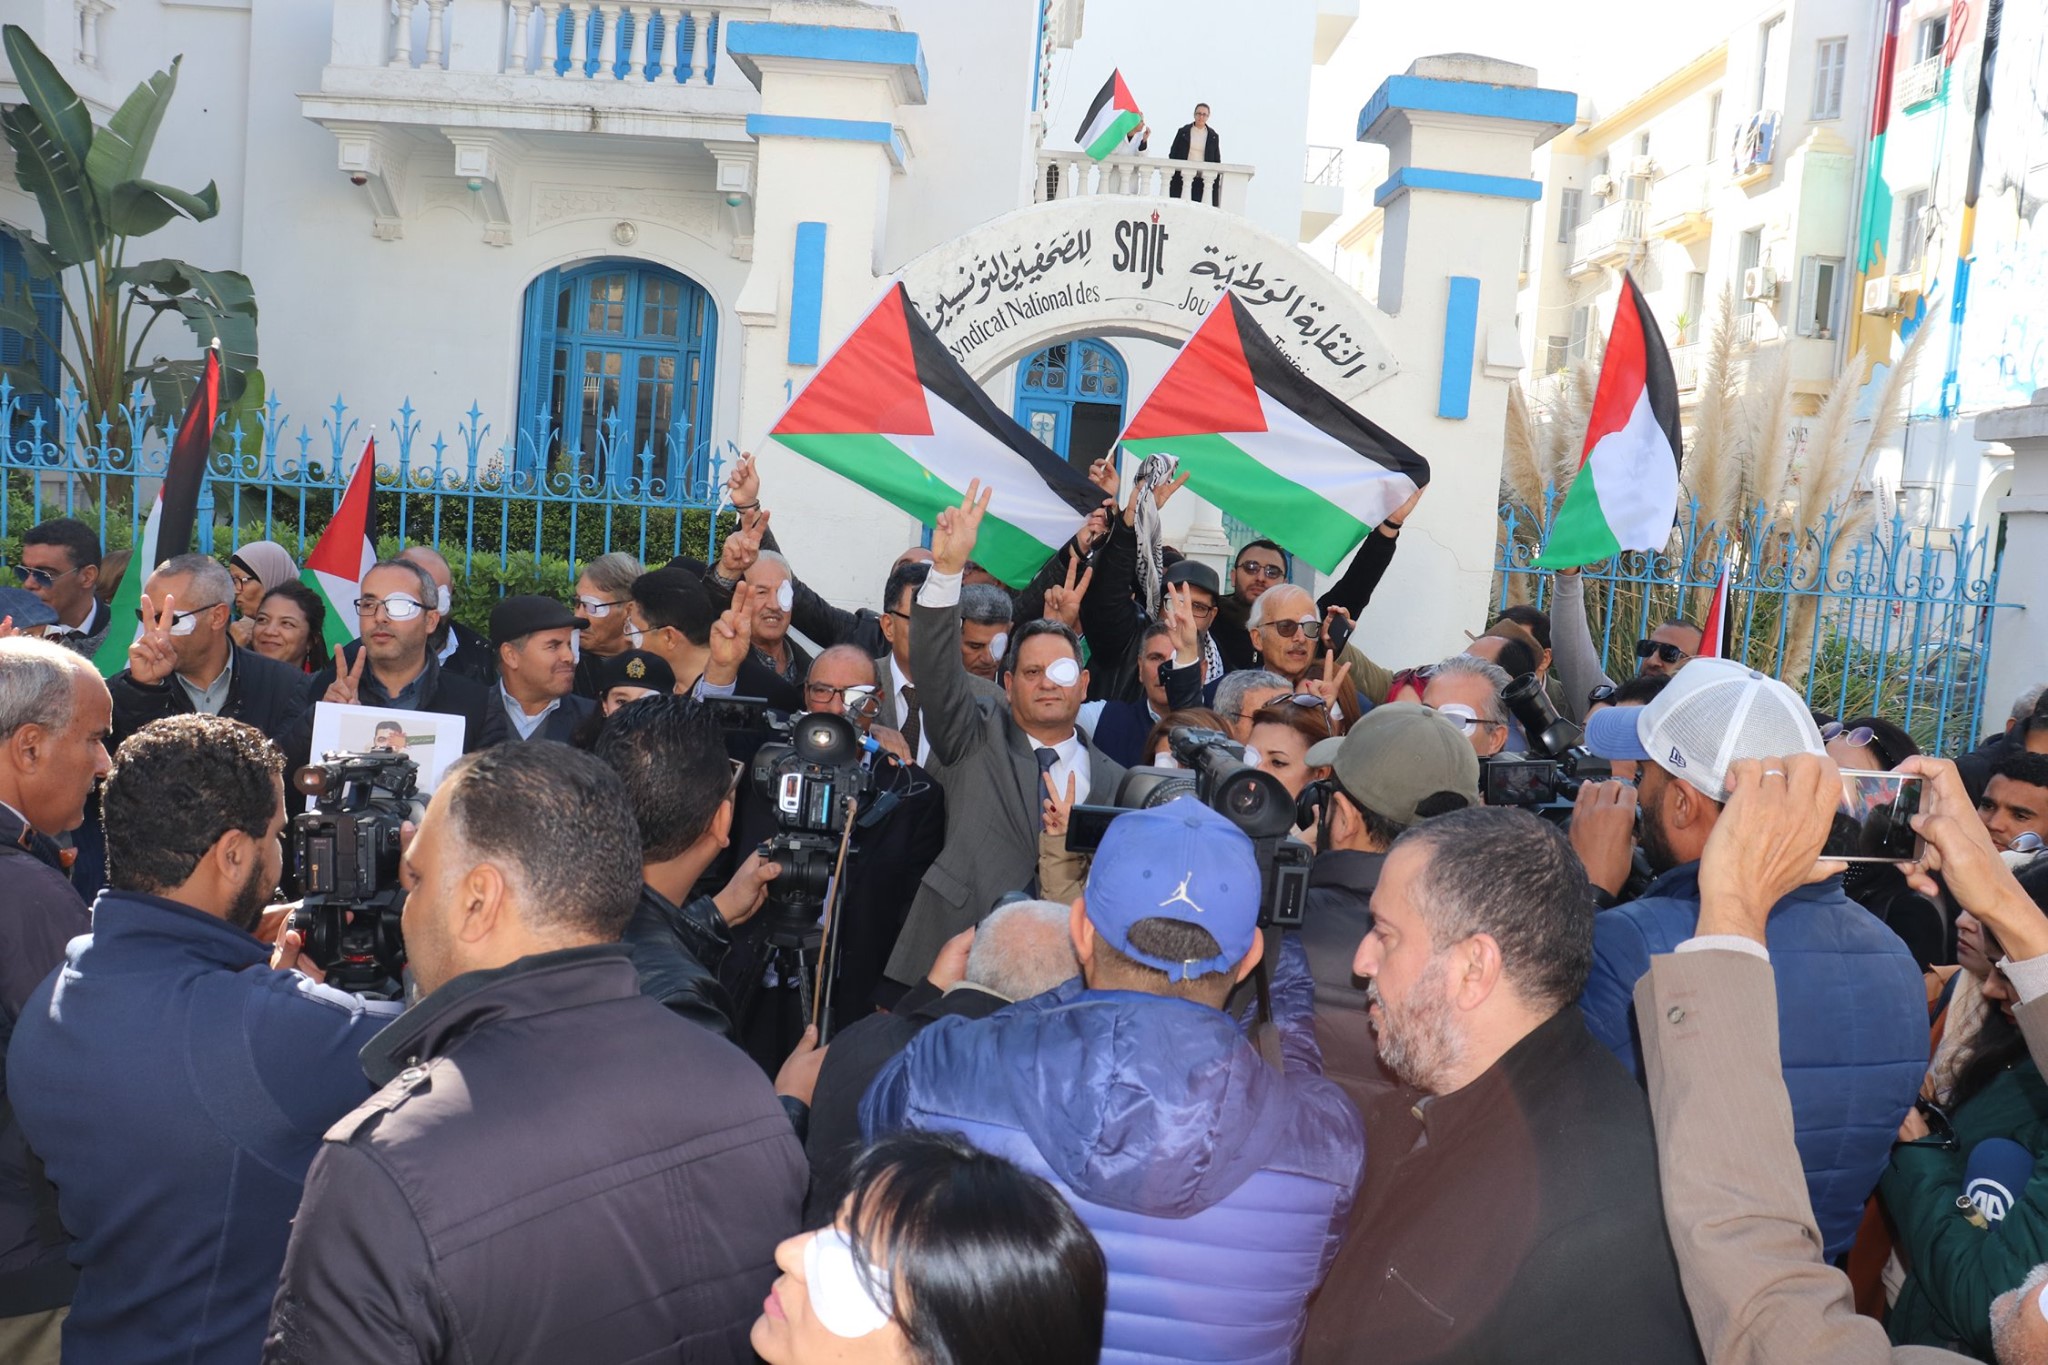 تضامنا مع زميلهم الفلسطيني معاذ عمارنة؛ الصحافيون التونسيون يحتجون ضد سياسة فقأ عيون الحقيقة